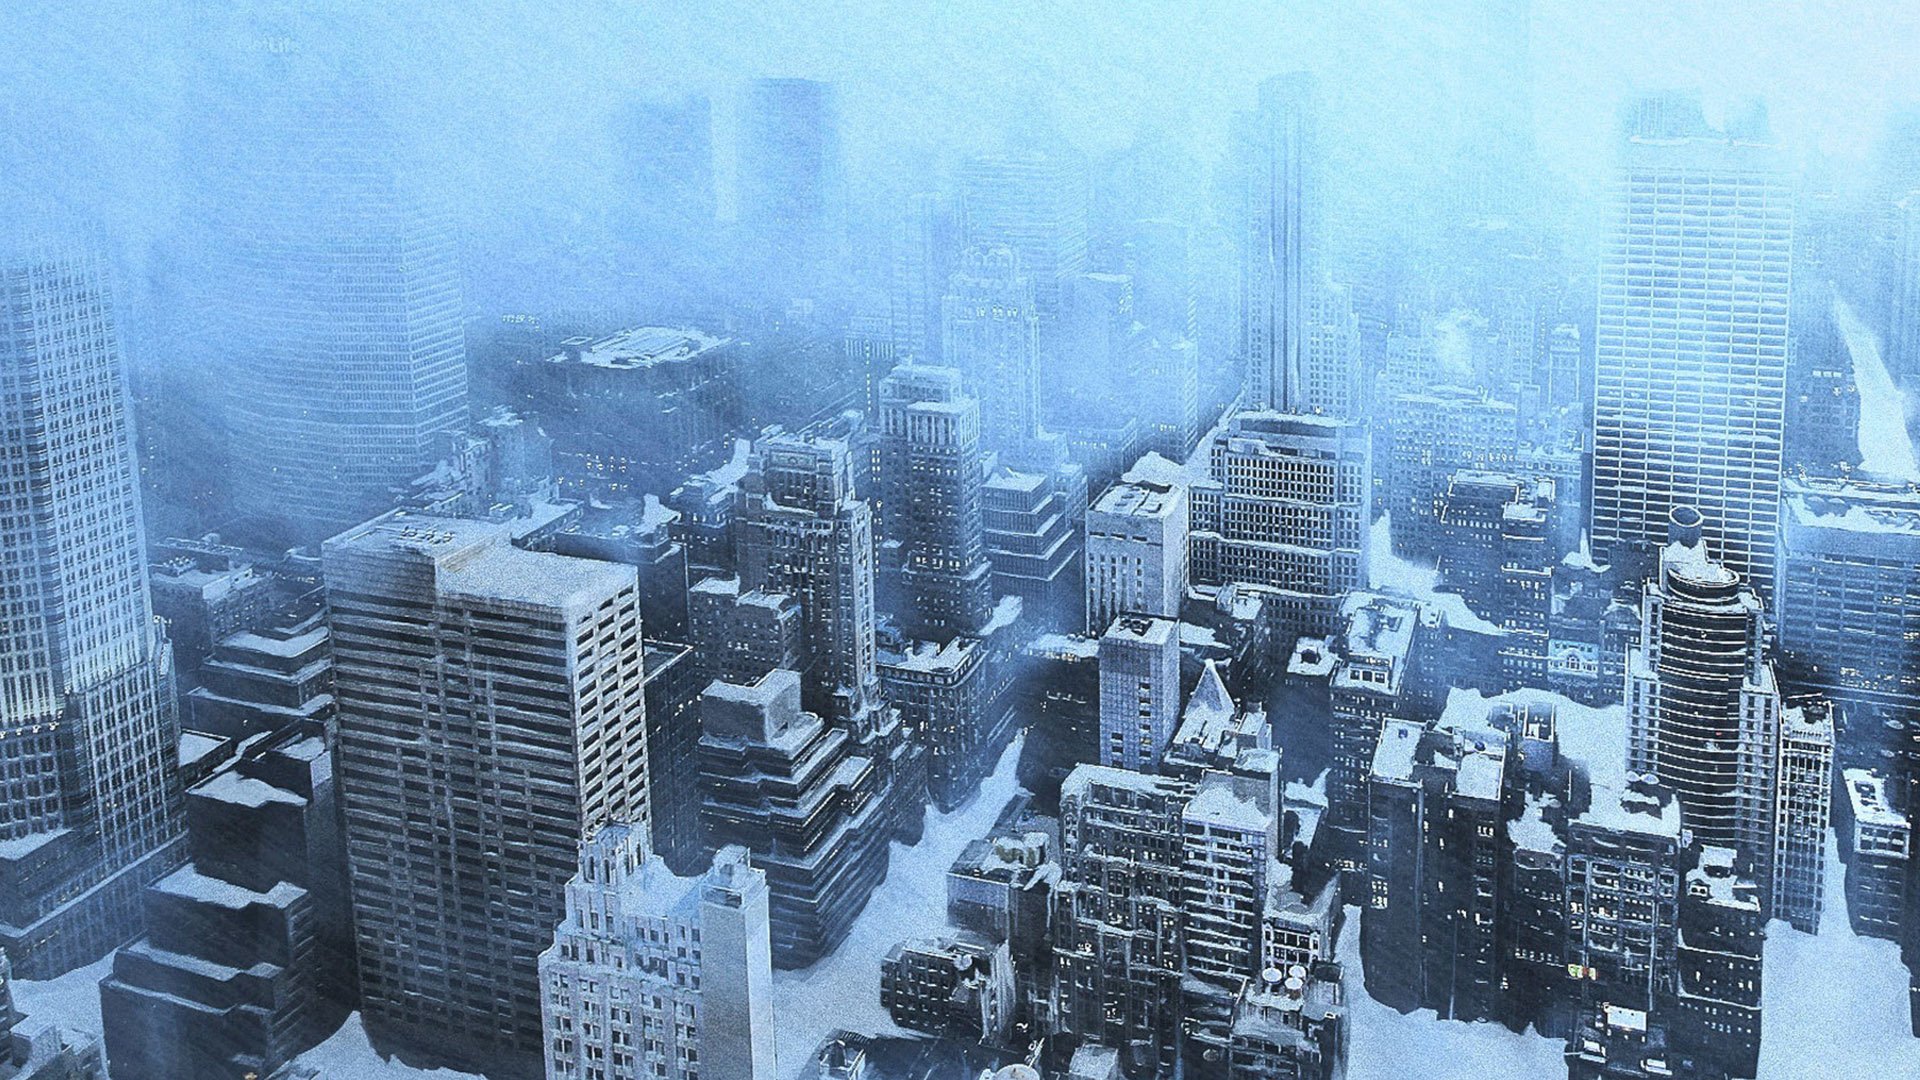 Szenenbild zum Thema Erfrischungsfilme: Manhattan liegt in einer Panoramaaufnahme aus Roland Emmerichs THE DAY AFTER TOMORROW in Schnee und Eis.